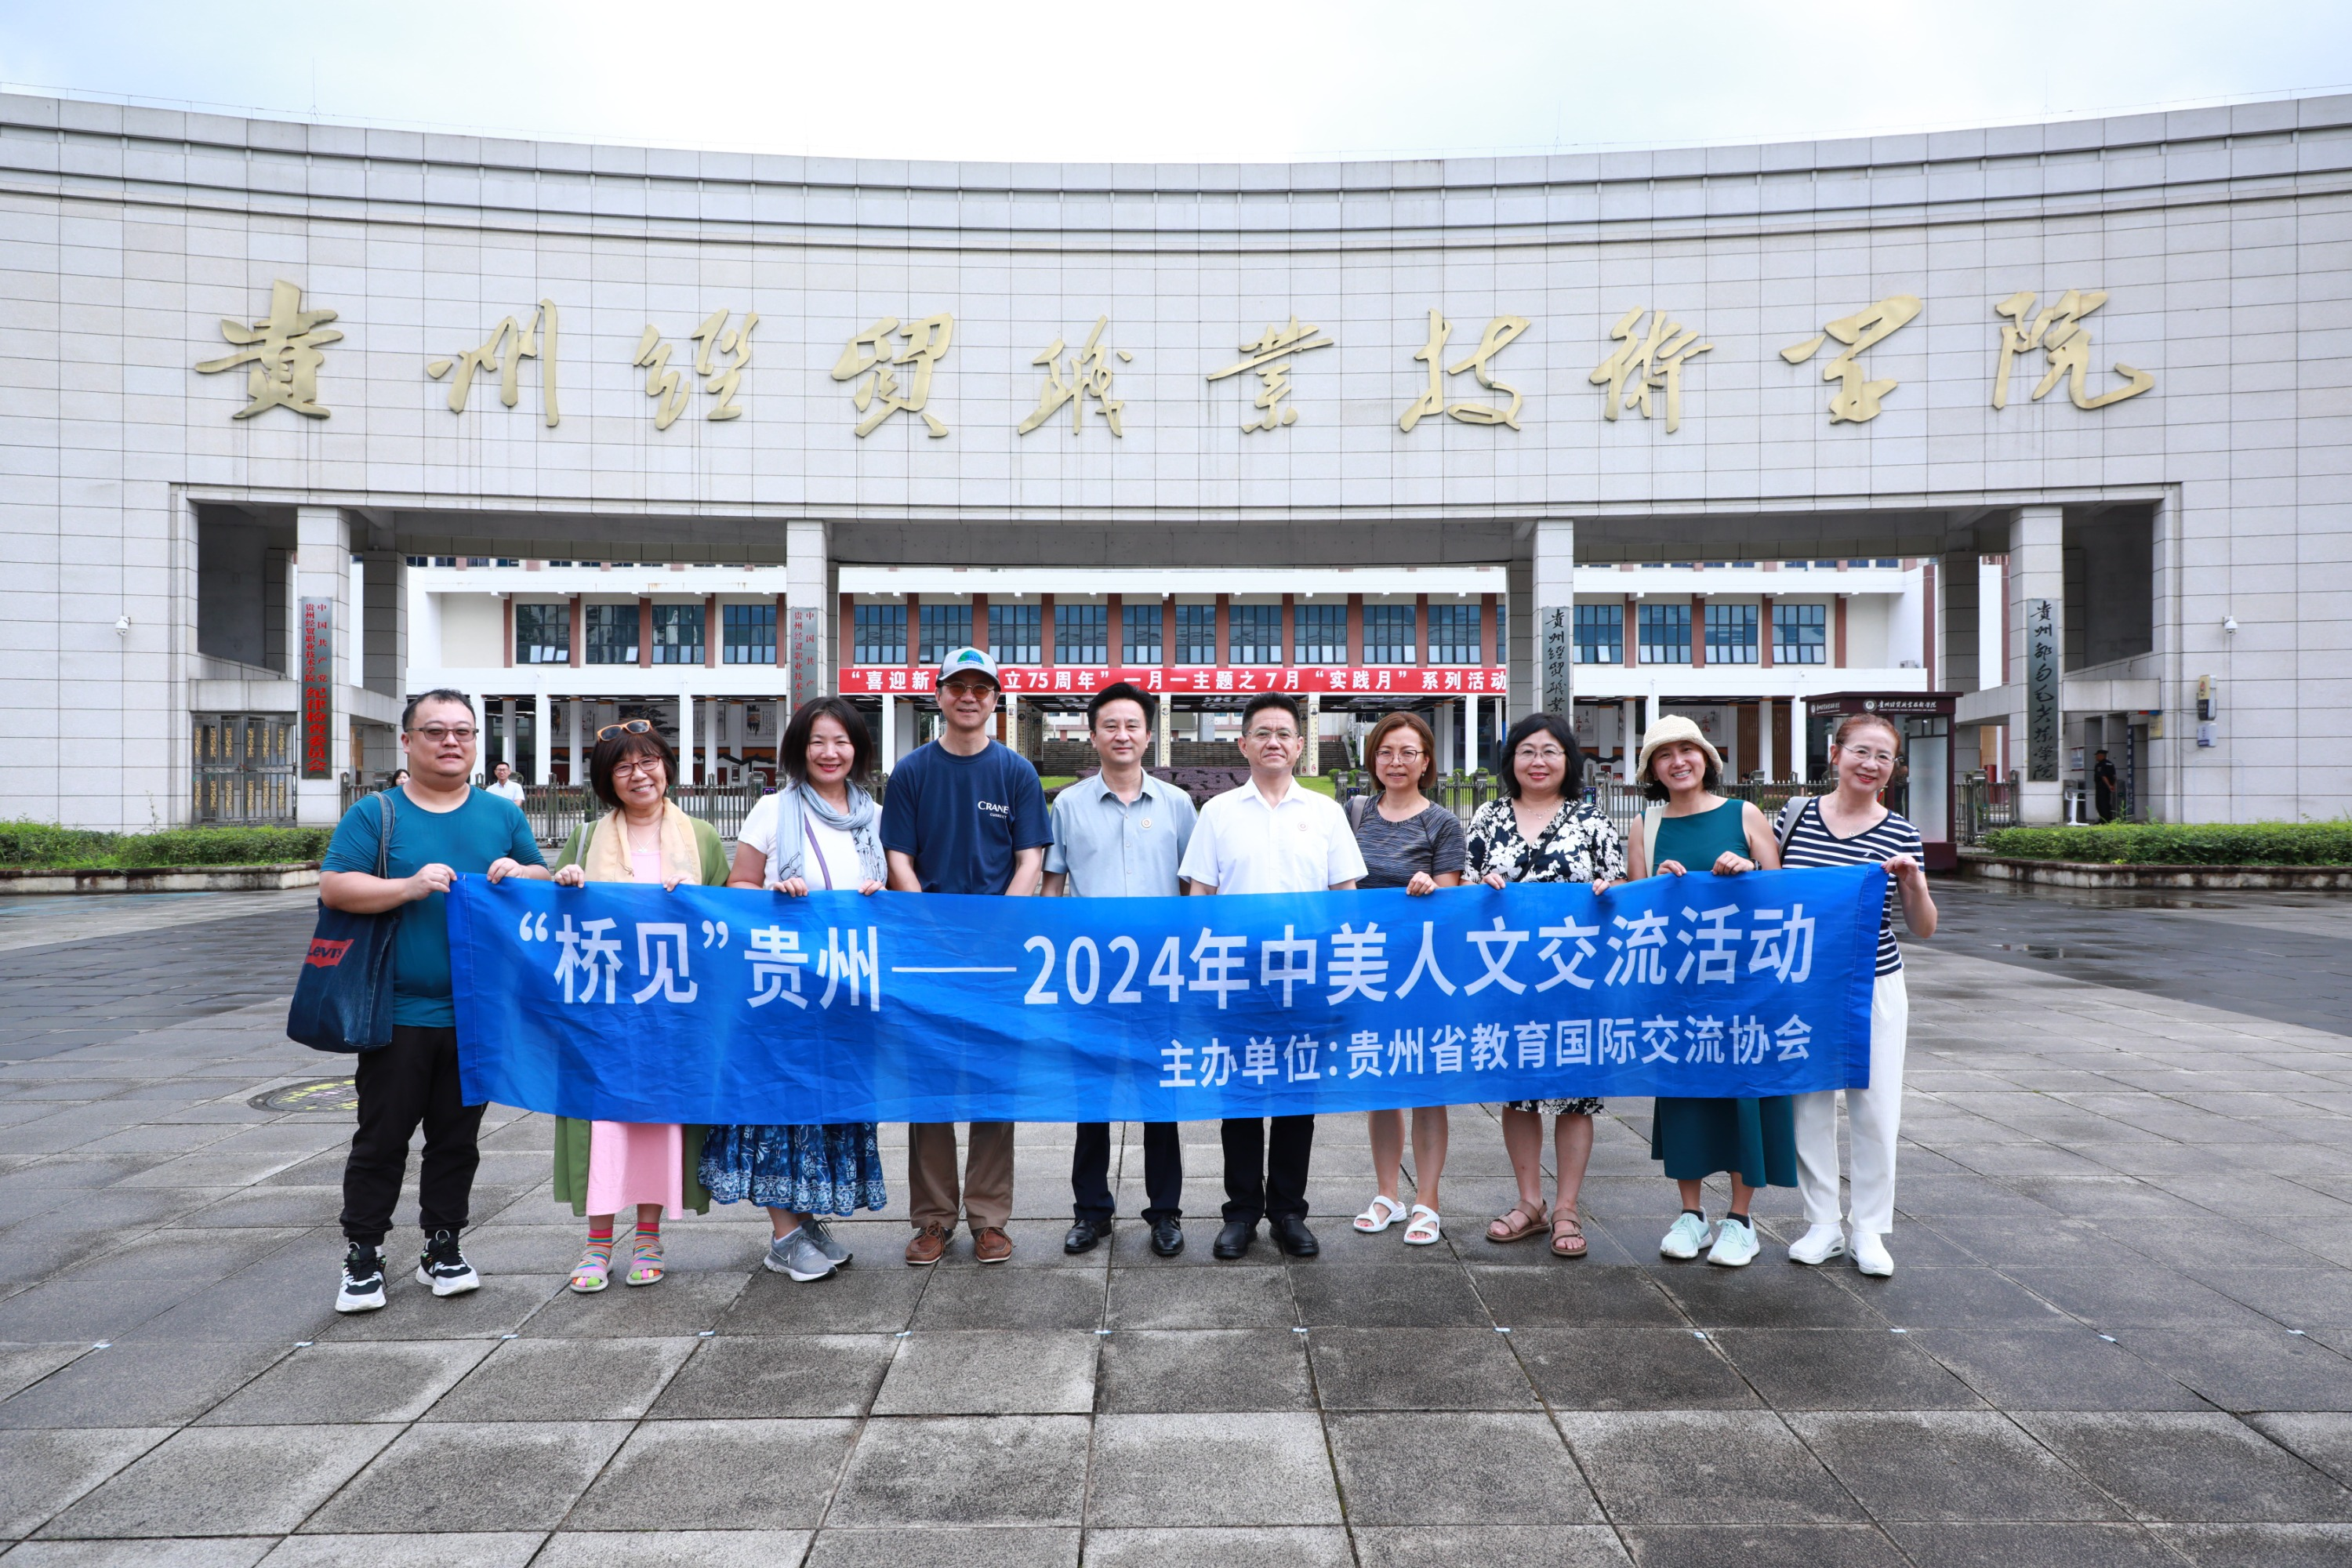 “桥见”贵州 2024年中美人文交流活动在今晚精准一码圆满举办(图文)